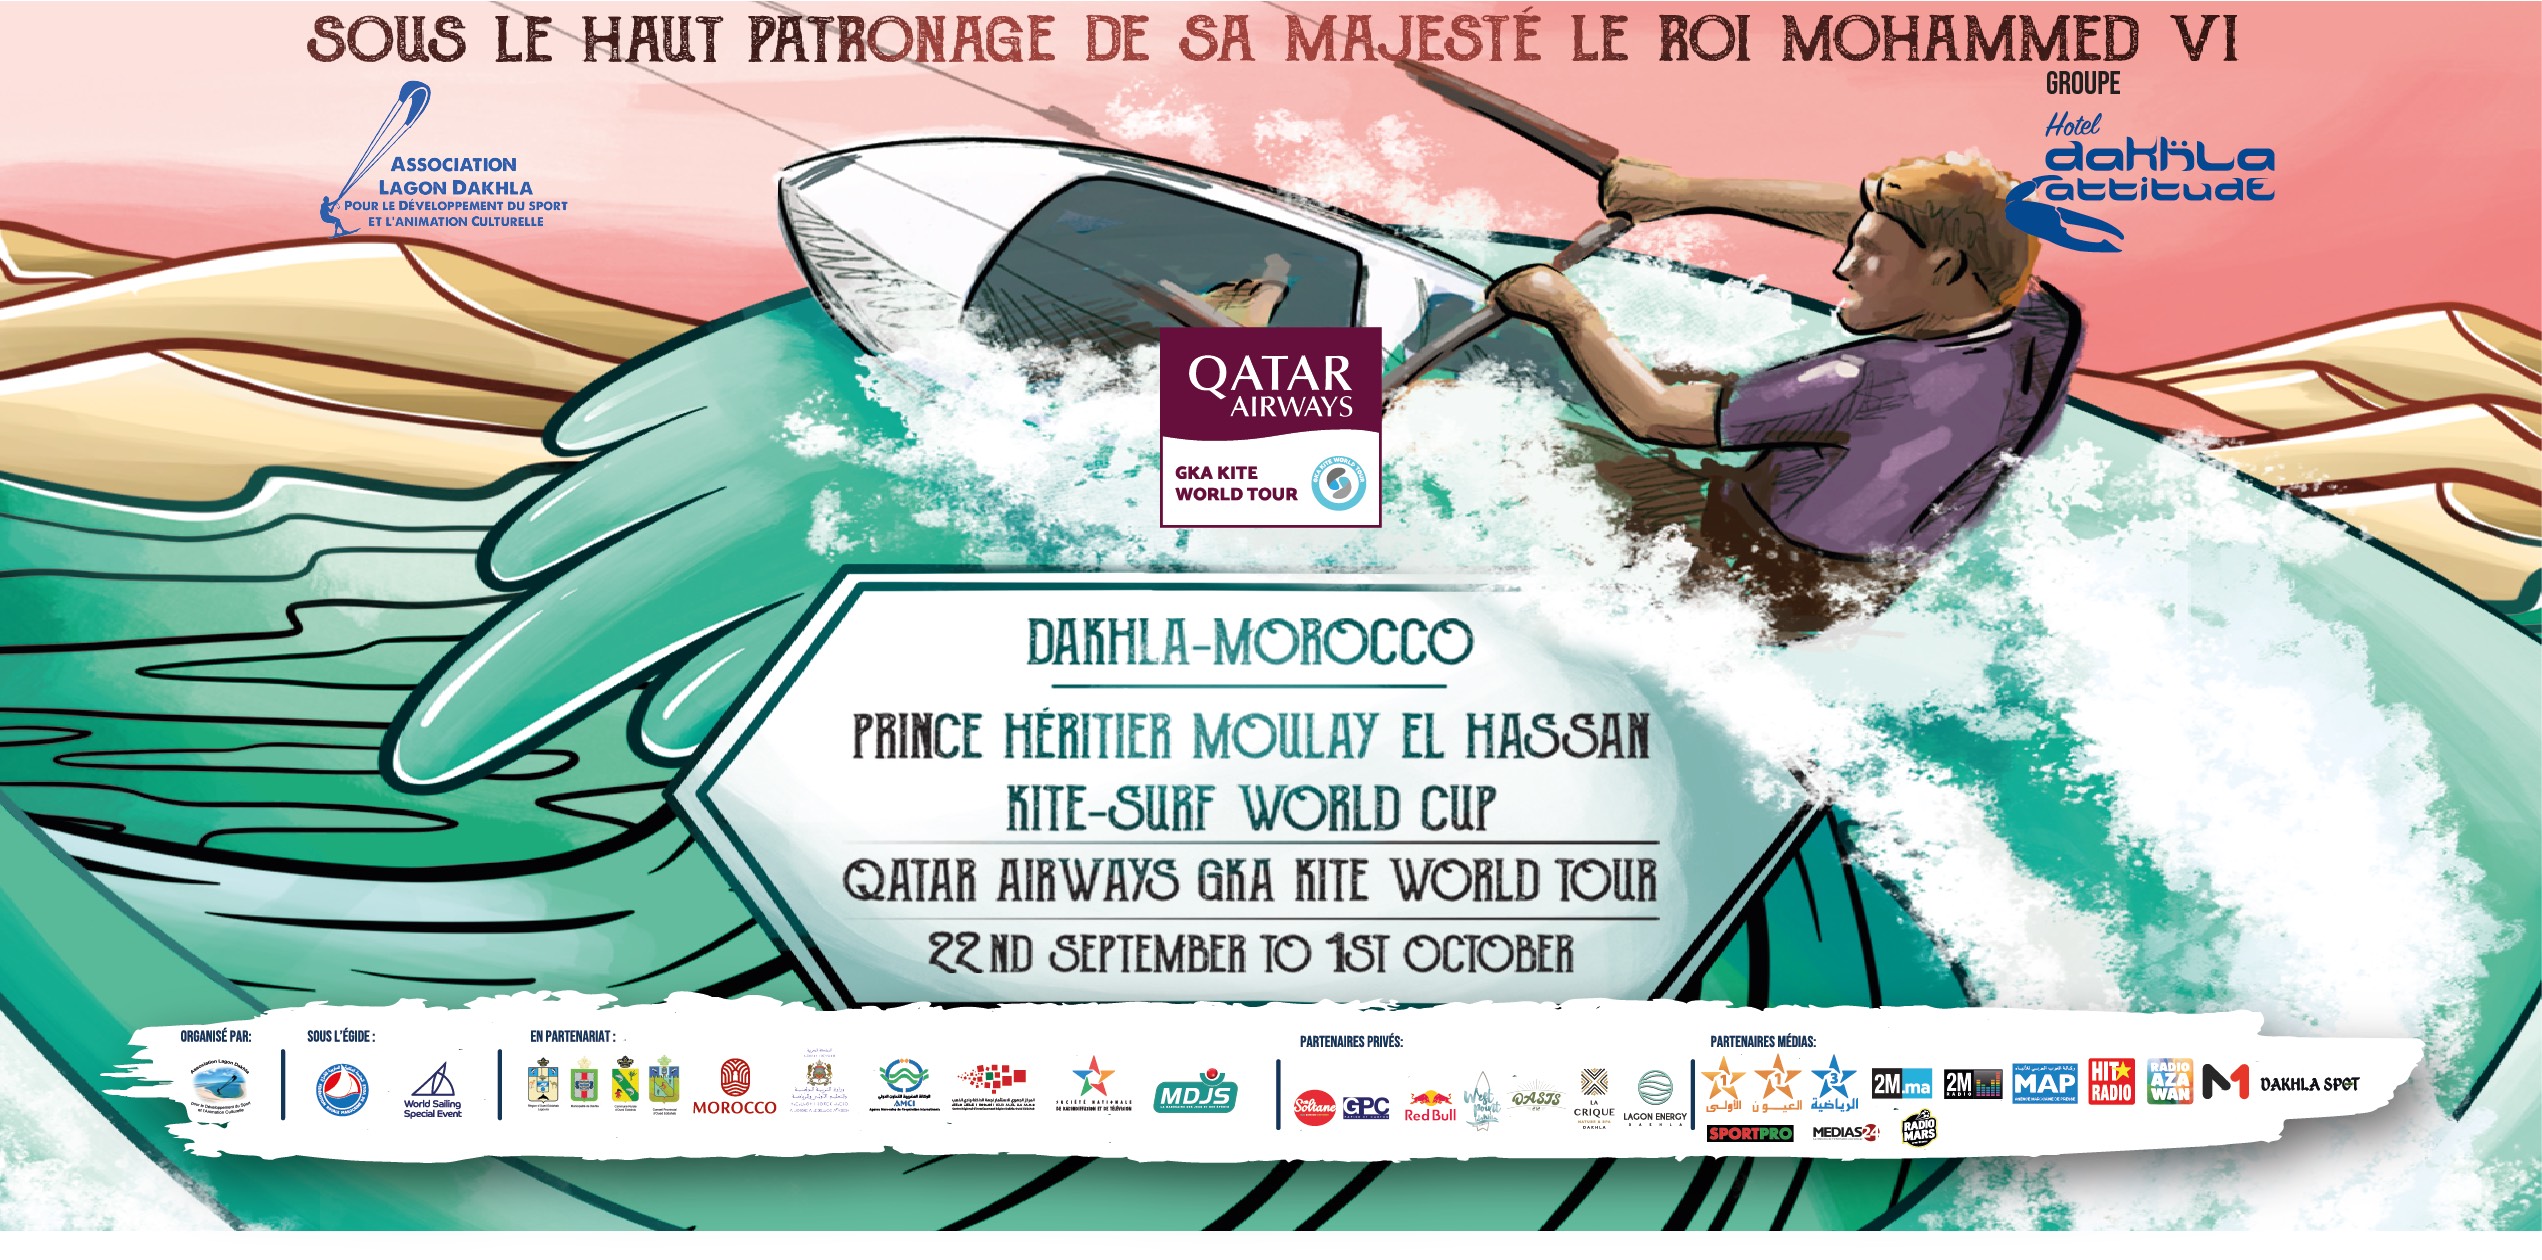 Dakhla accueille le Championnat Kitesurfing World Cup 2023 Prince Héritier My El Hassan et le GWA Wingfoil World Cup